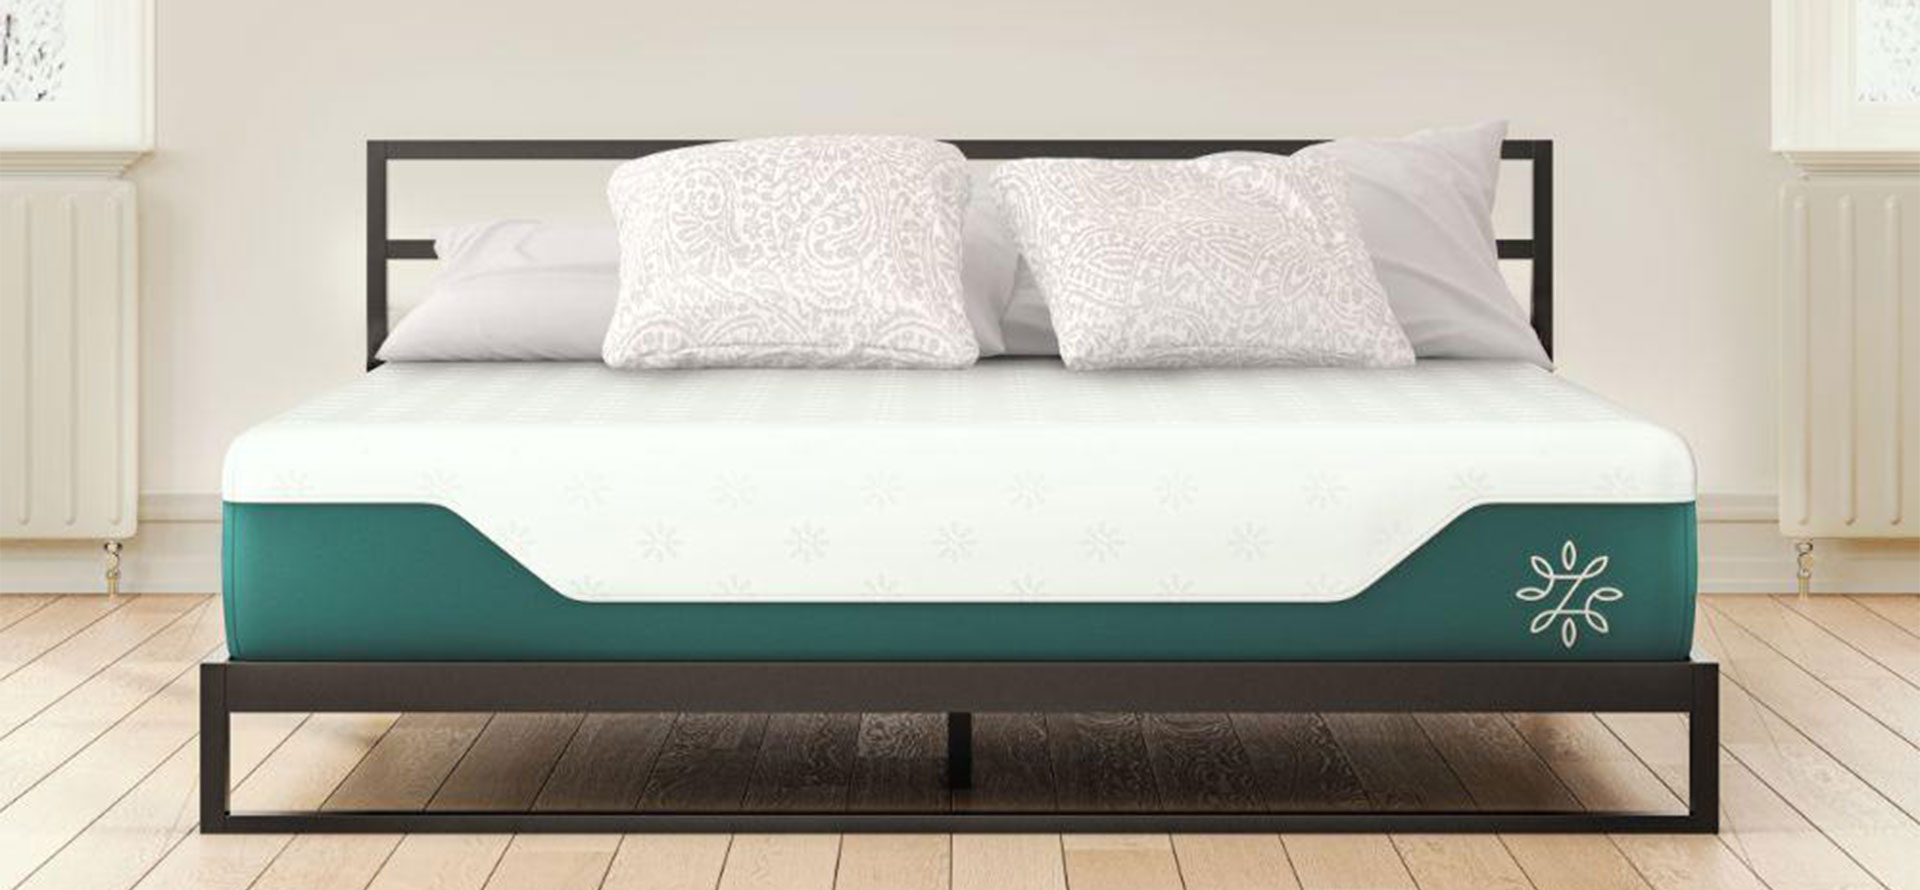 Zinus mattress on a bed.